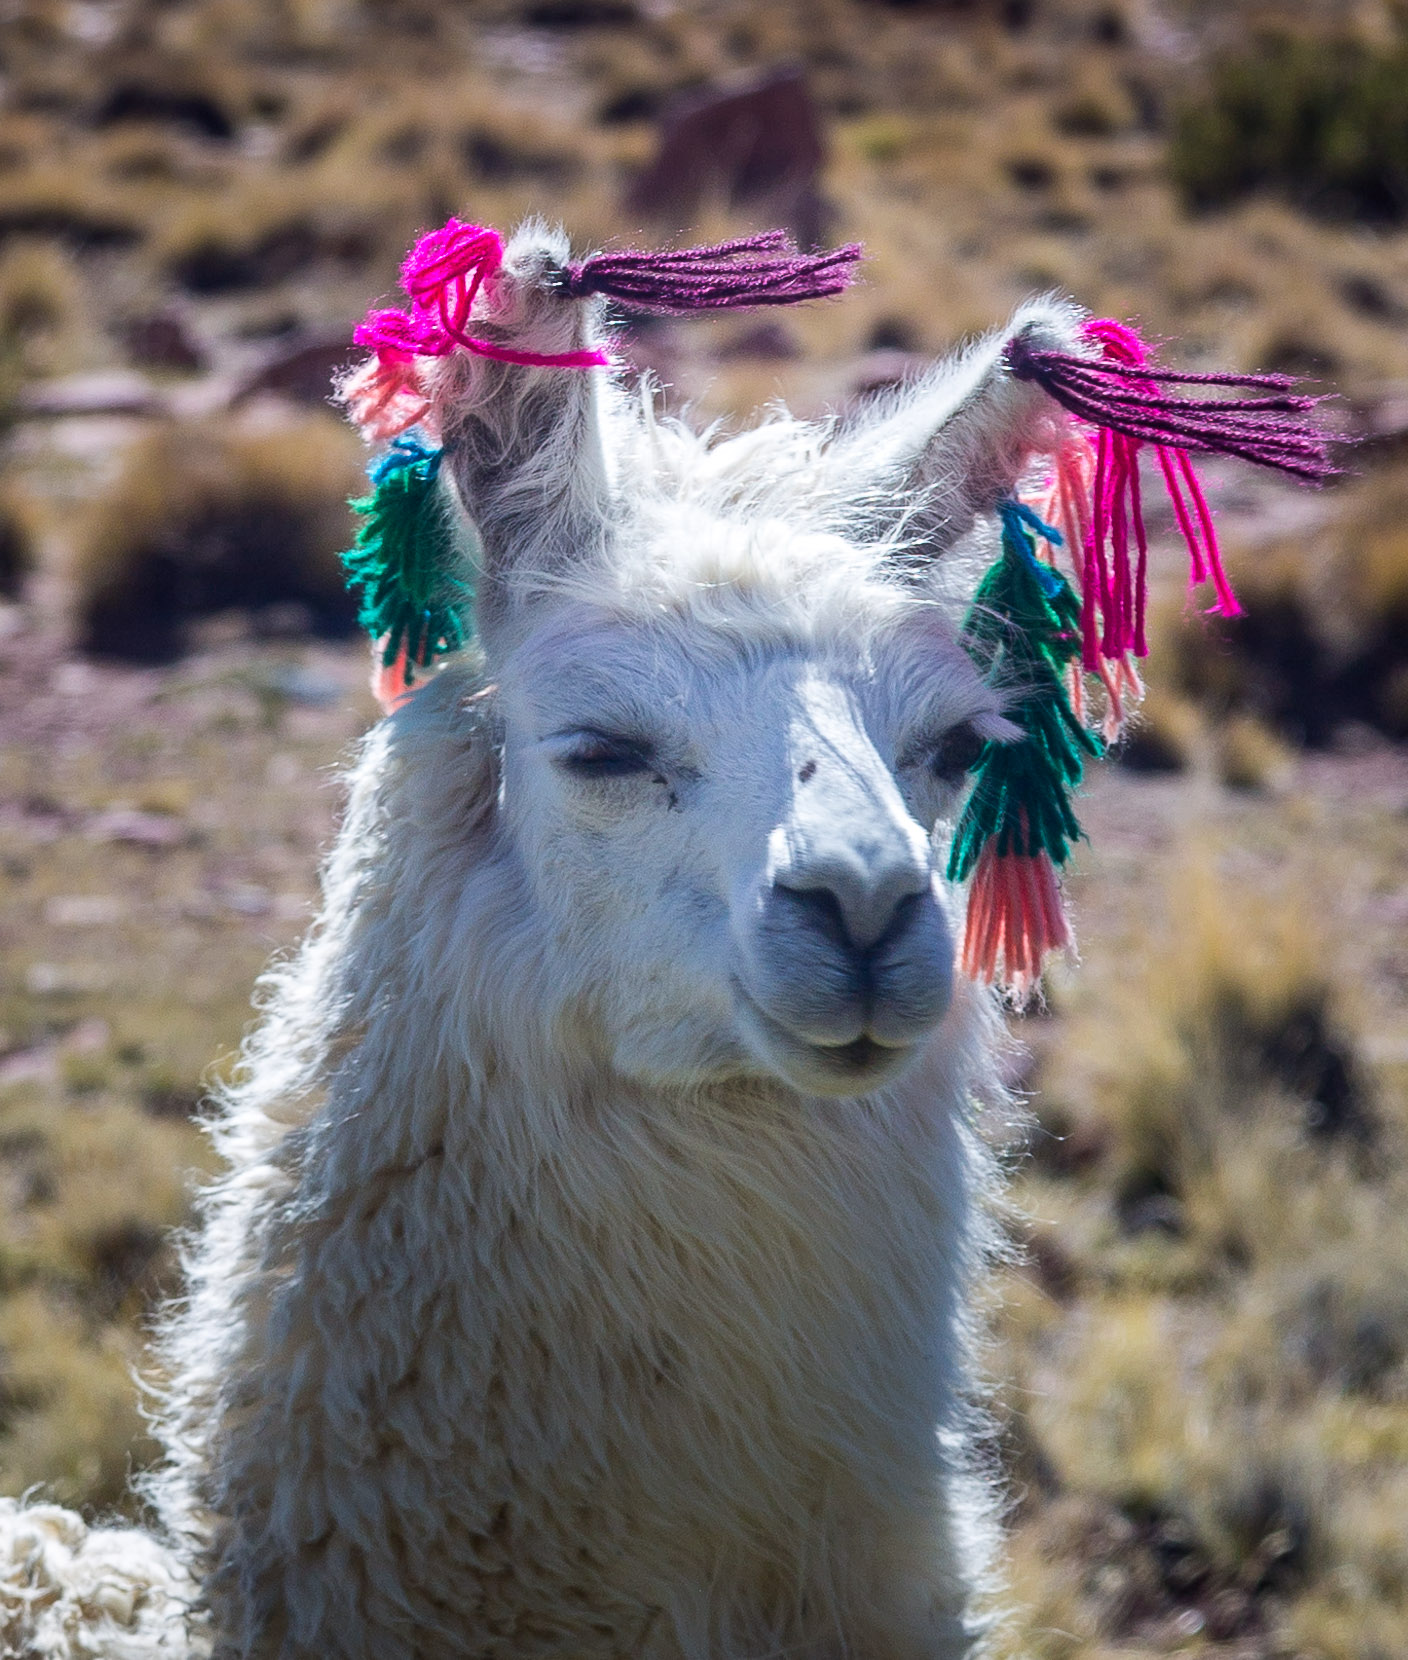 Llama earrings